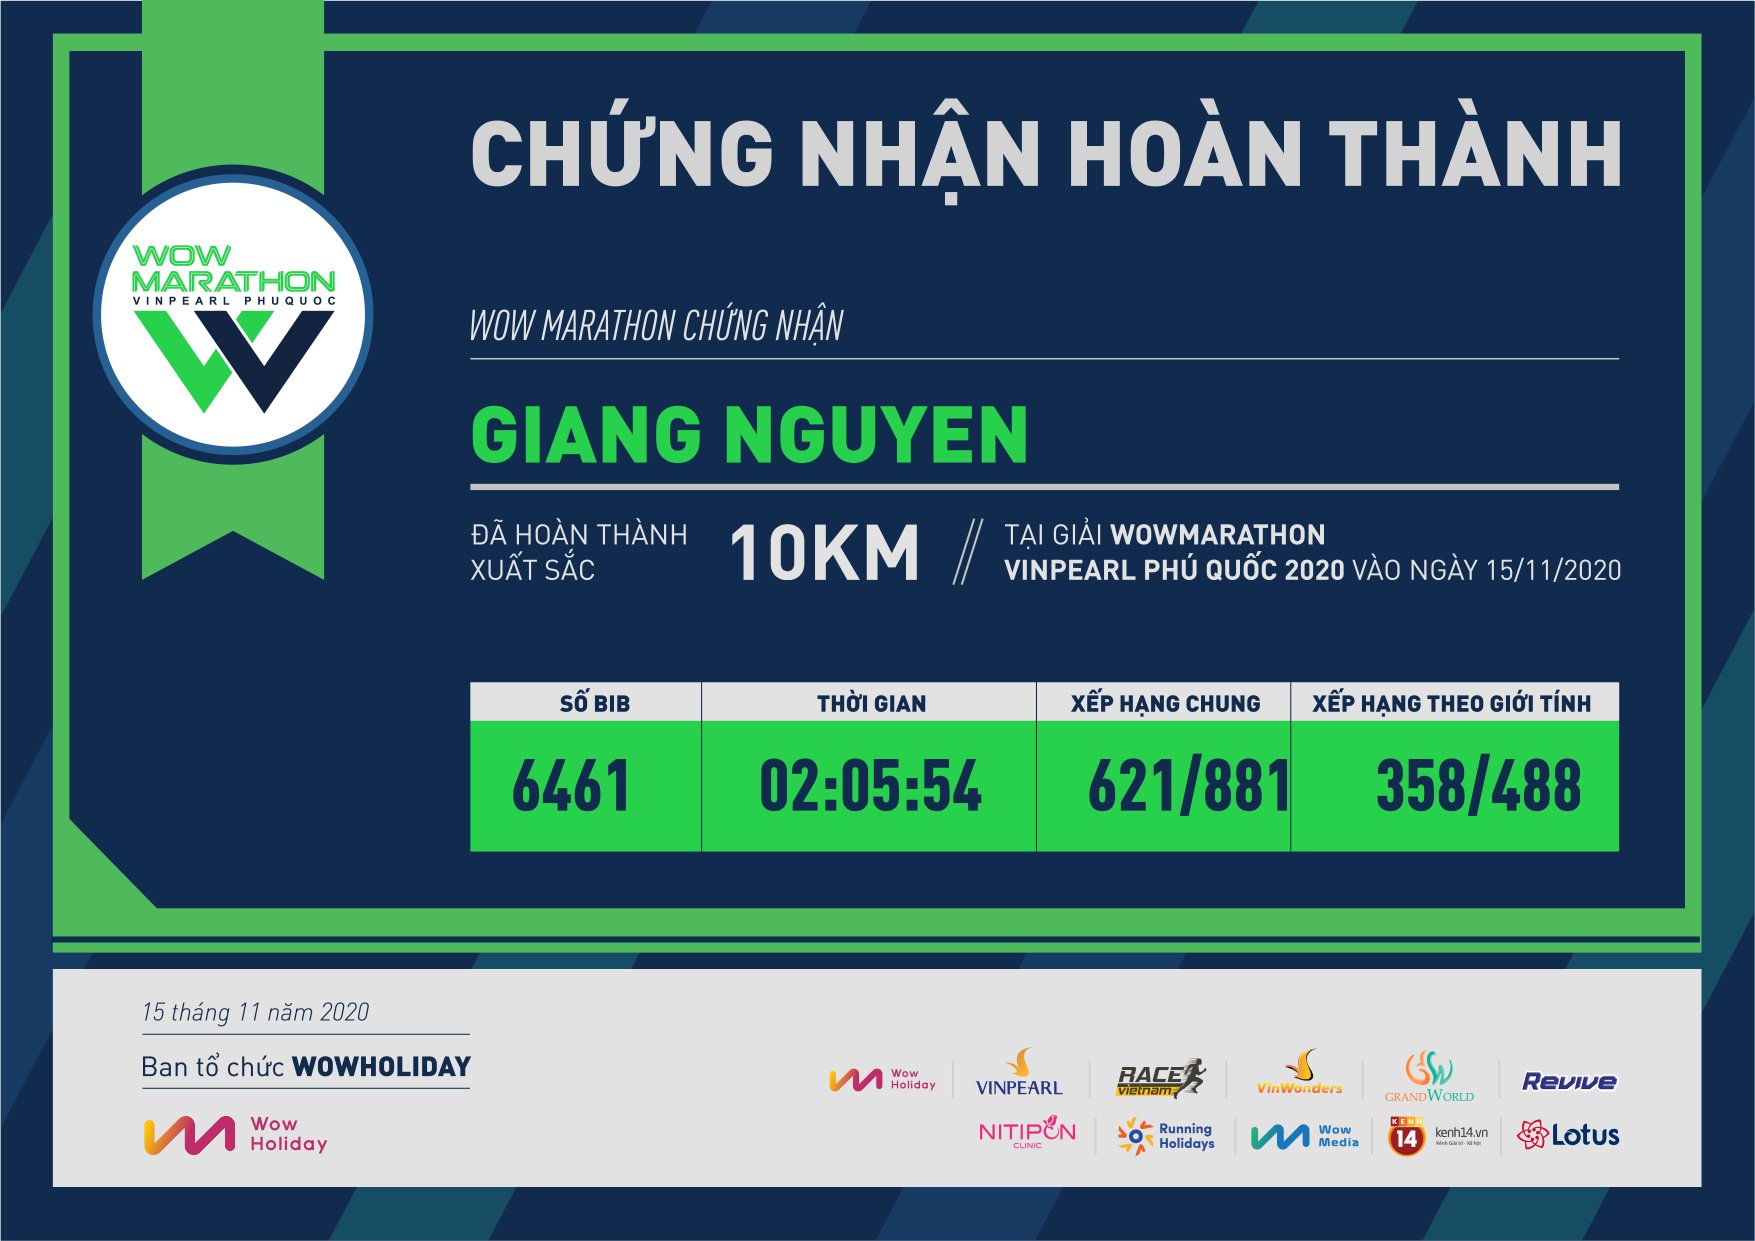 6461 - Giang Nguyen